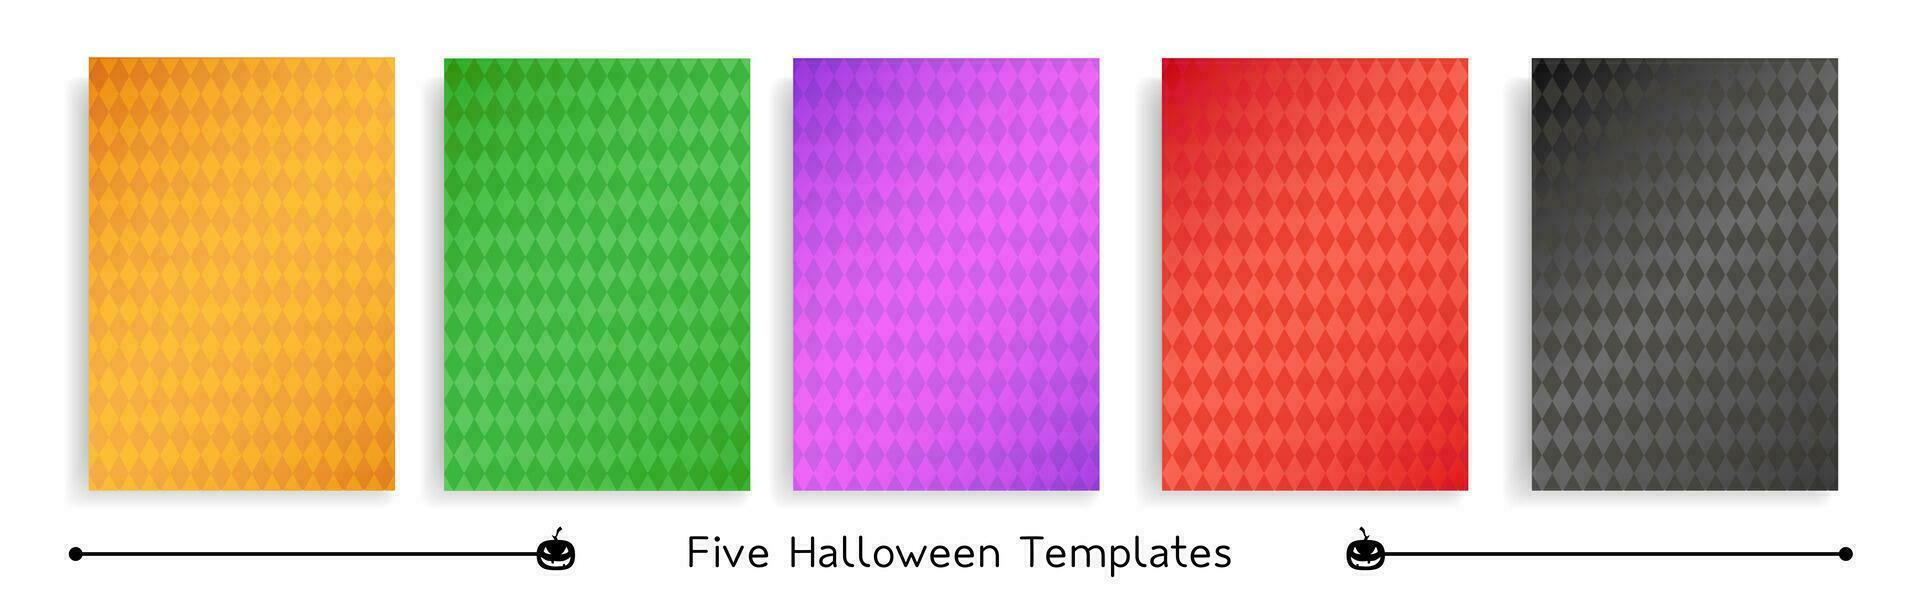 cinque Halloween piazza modelli, singolo rombo modelli nel tradizionale Halloween colori, gruppo di vettore piazza sfondi.